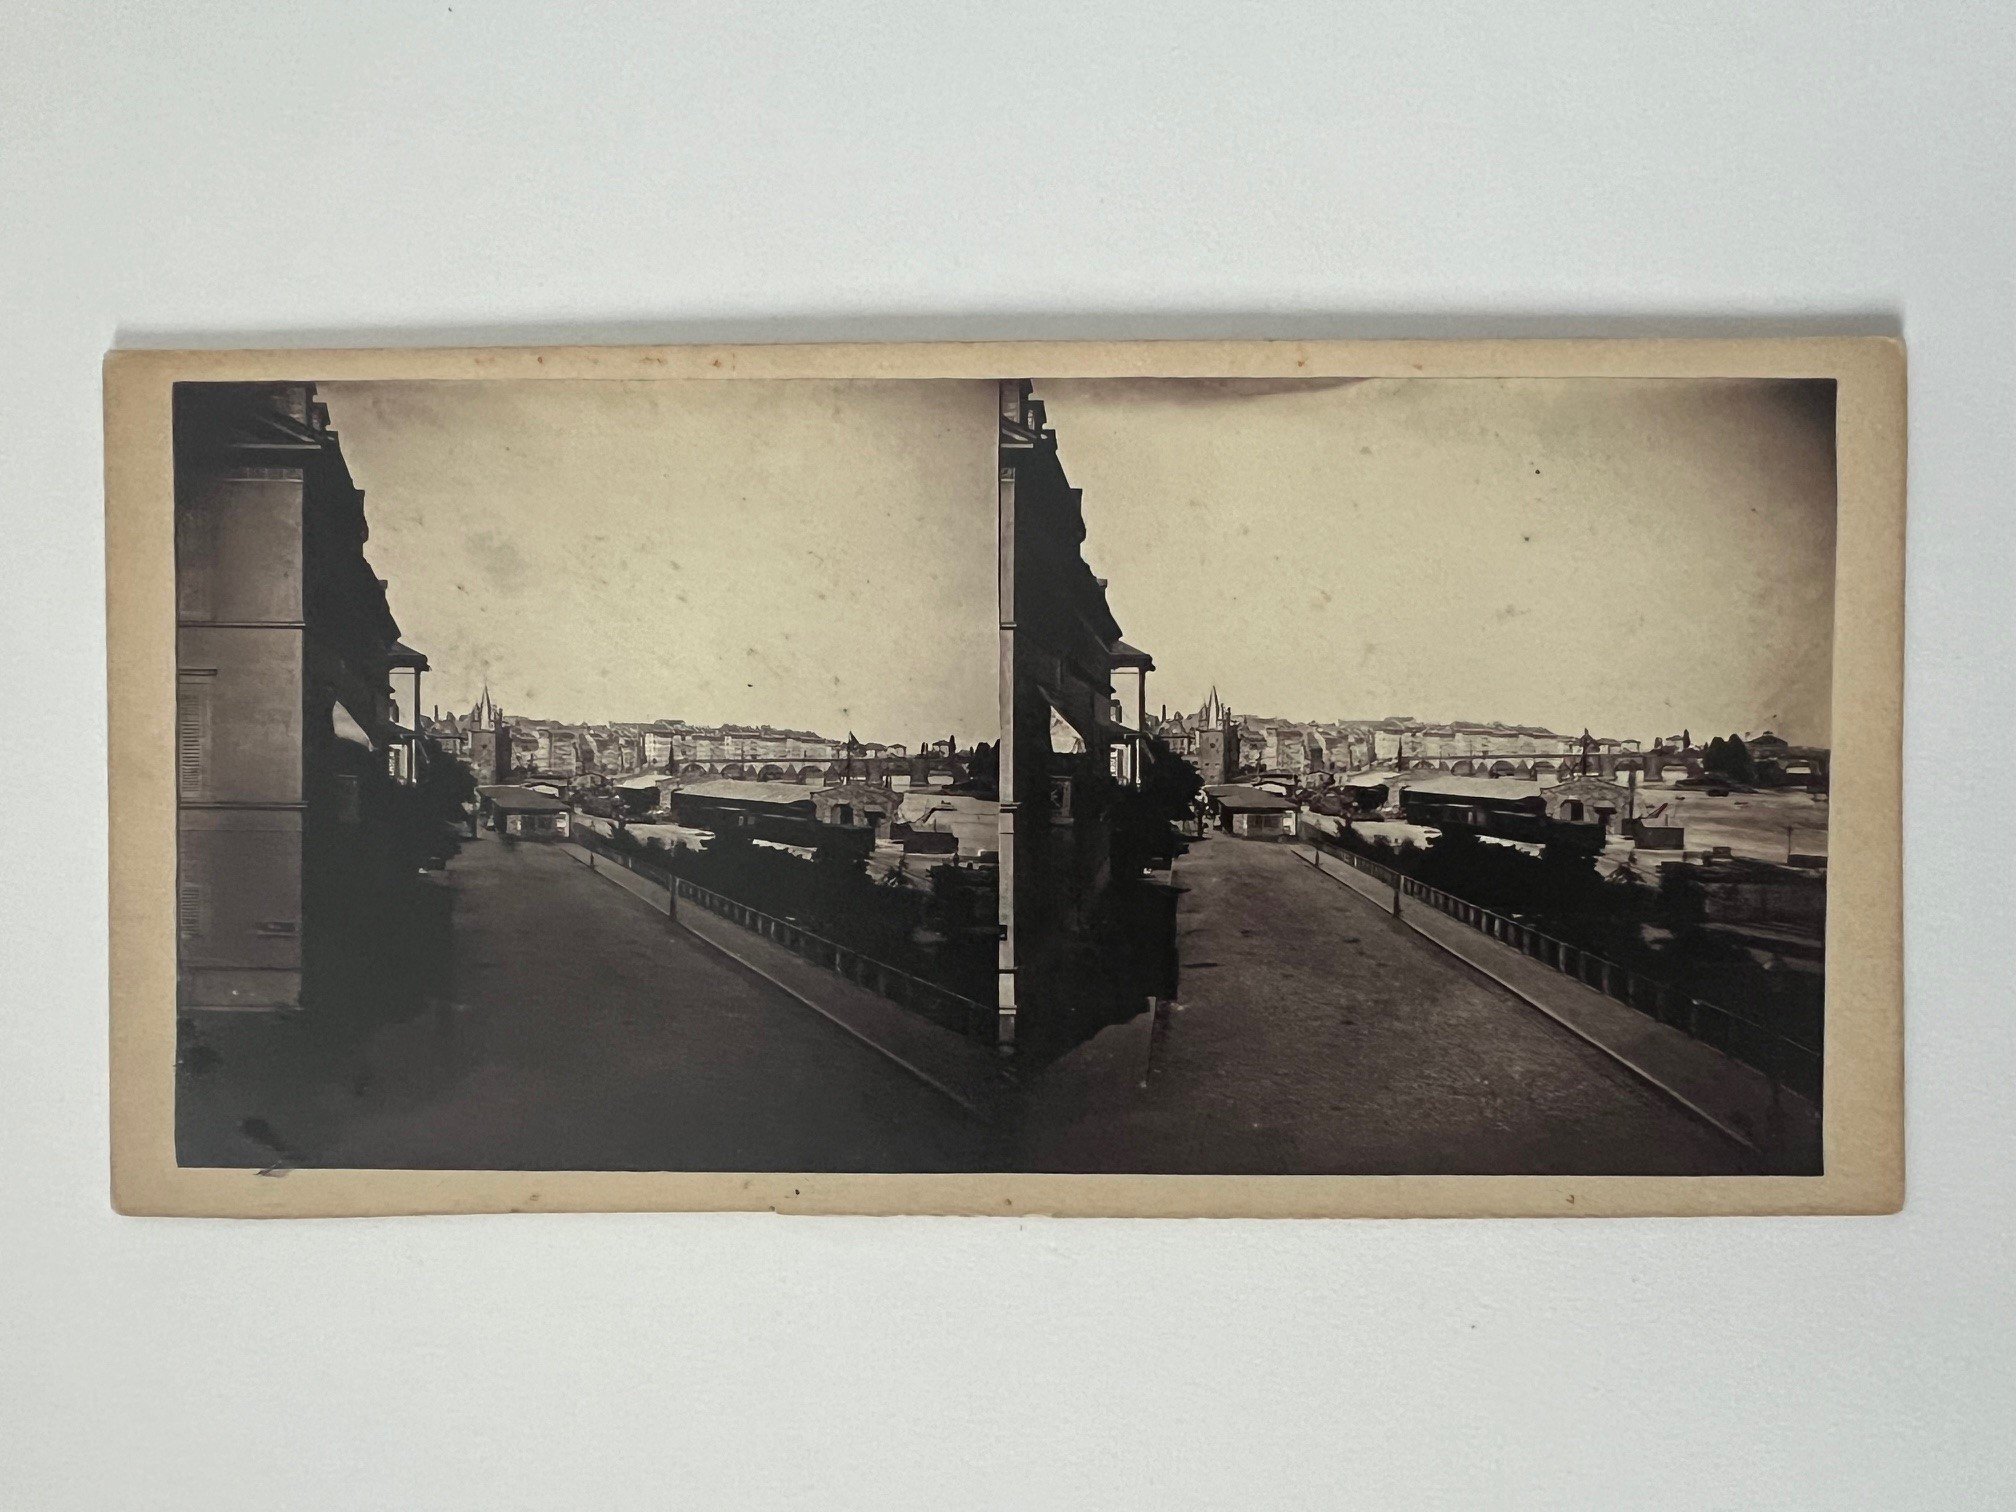 Stereobild, Unbekannter Fotograf, Frankfurt, Main-Promenade, ca. 1869. (Taunus-Rhein-Main - Regionalgeschichtliche Sammlung Dr. Stefan Naas CC BY-NC-SA)